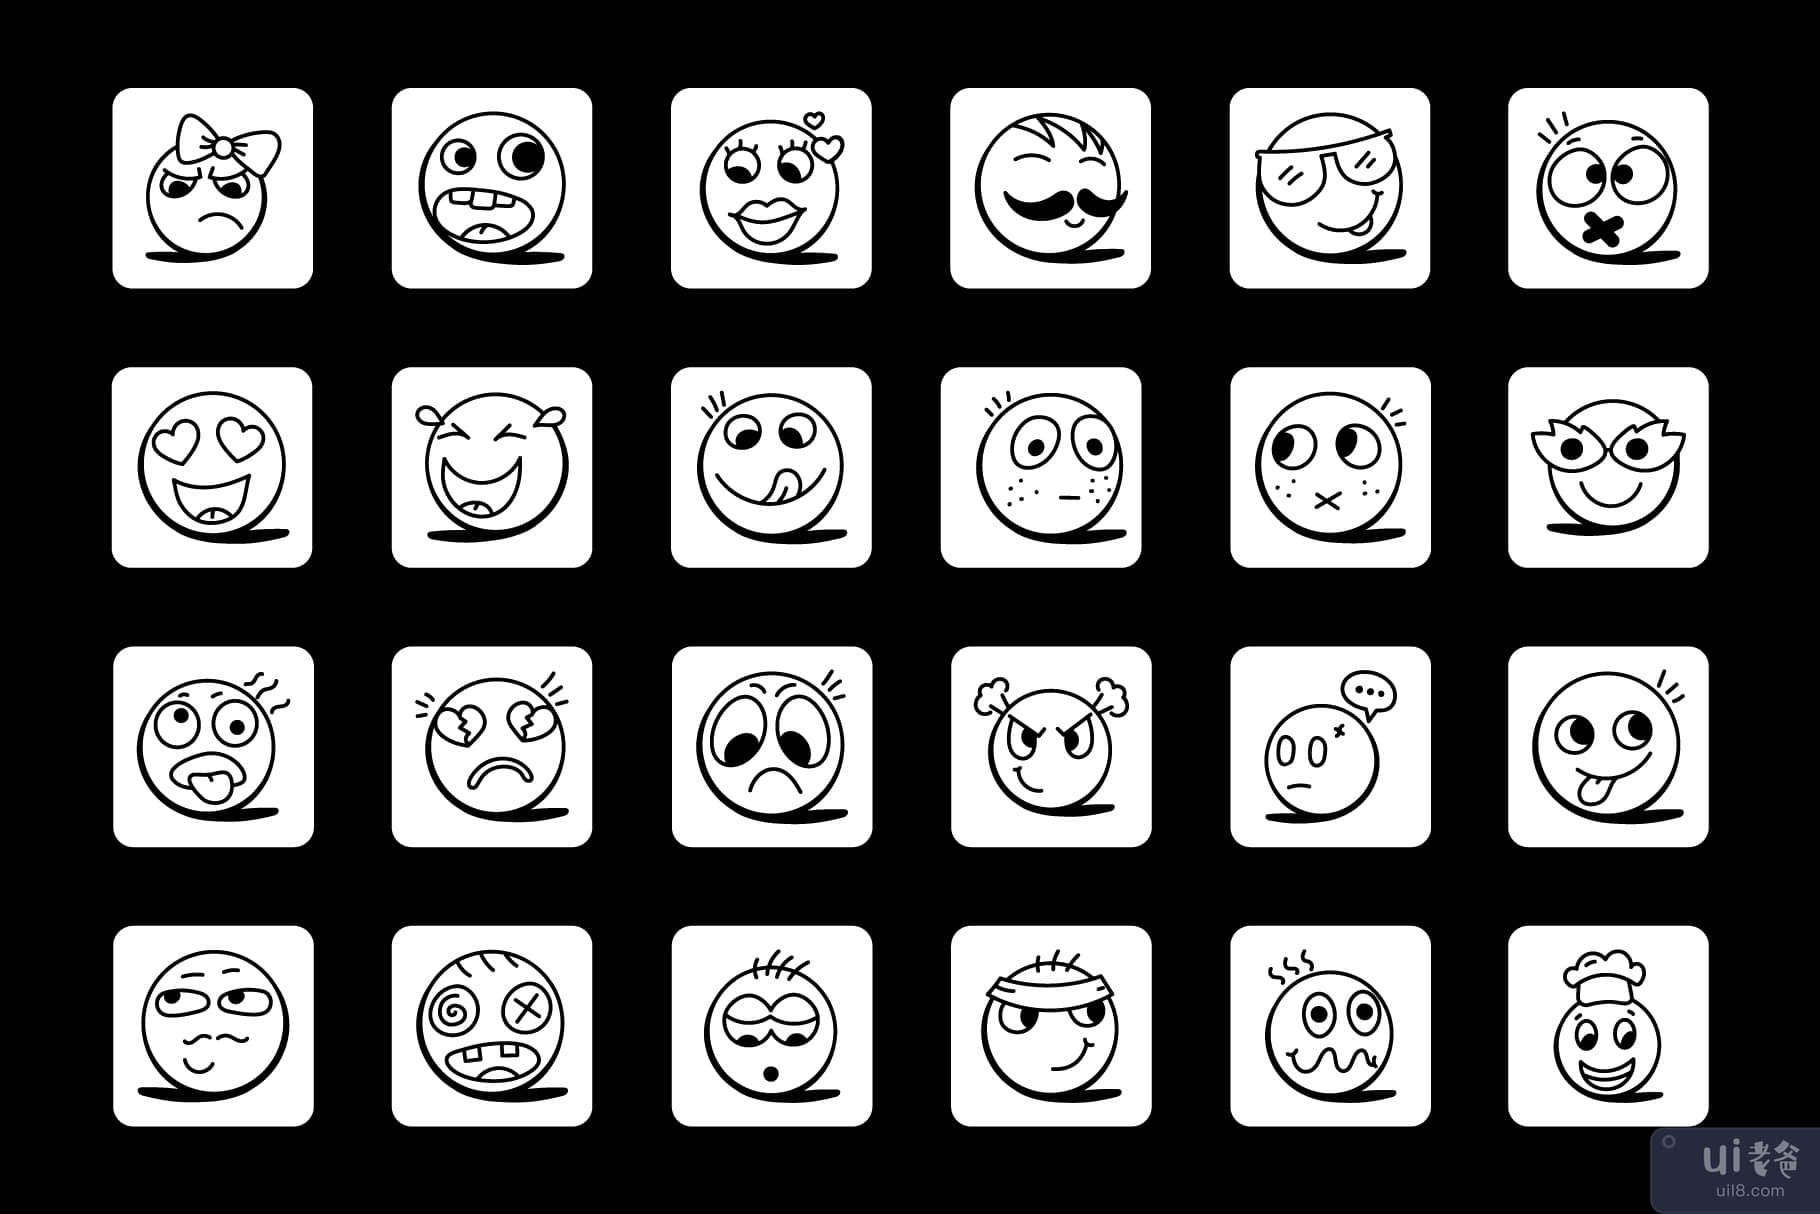 笑脸和表情符号图标的集合(Collection of Smileys and Emoji Icons)插图3